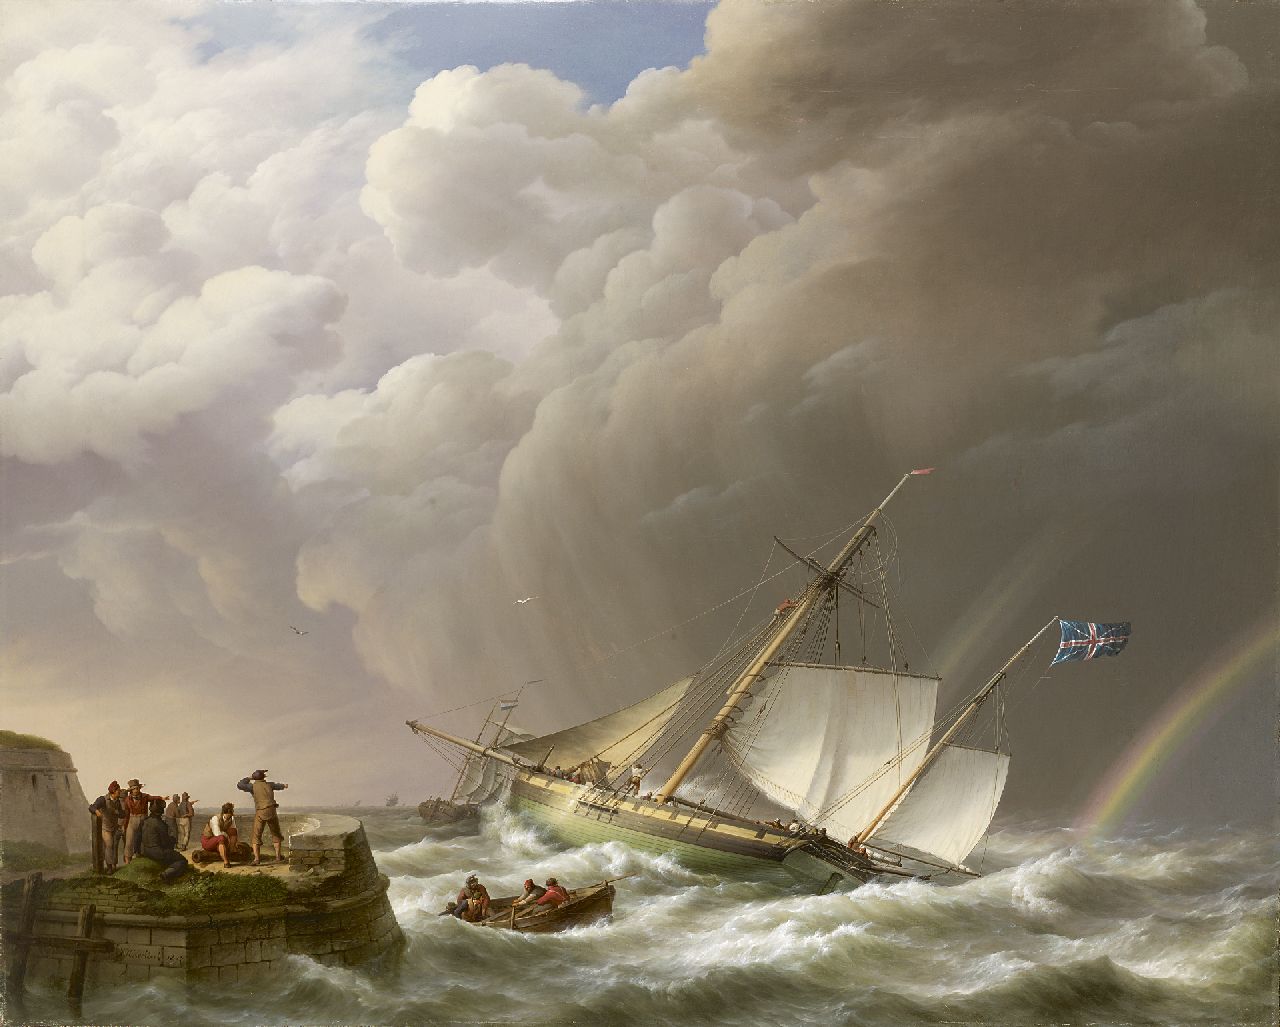 Koekkoek J.H.  | Johannes Hermanus Koekkoek, Een onstuimige zee met regenboog en Engelse oorlogskotter, olieverf op doek 113,0 x 142,0 cm, gesigneerd linksonder en gedateerd 1827